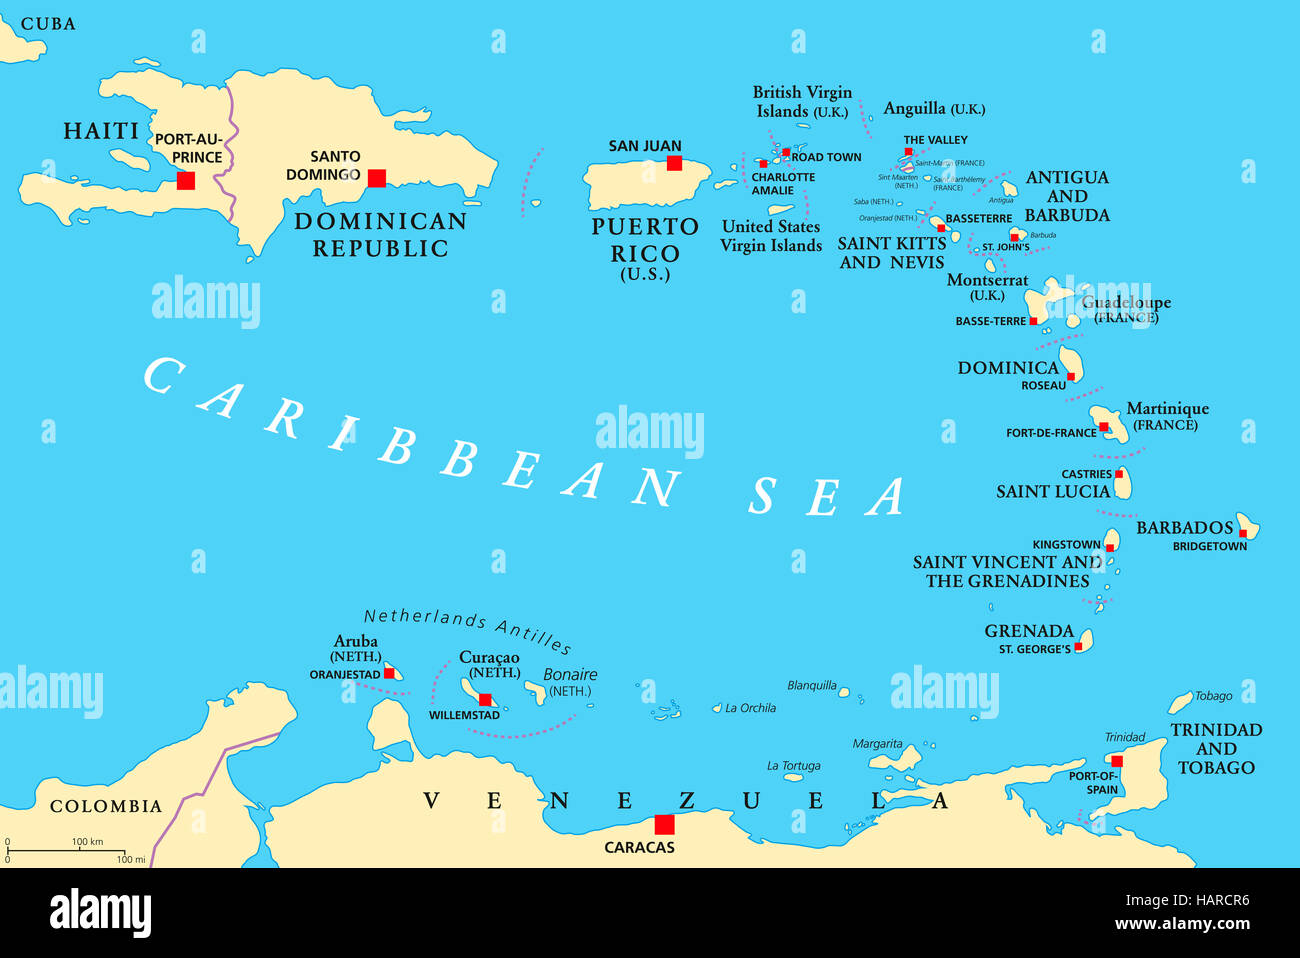 Mapa político de Antillas Menores. La Caribbees con Haití, la República Dominicana y Puerto Rico en el Mar Caribe. Foto de stock